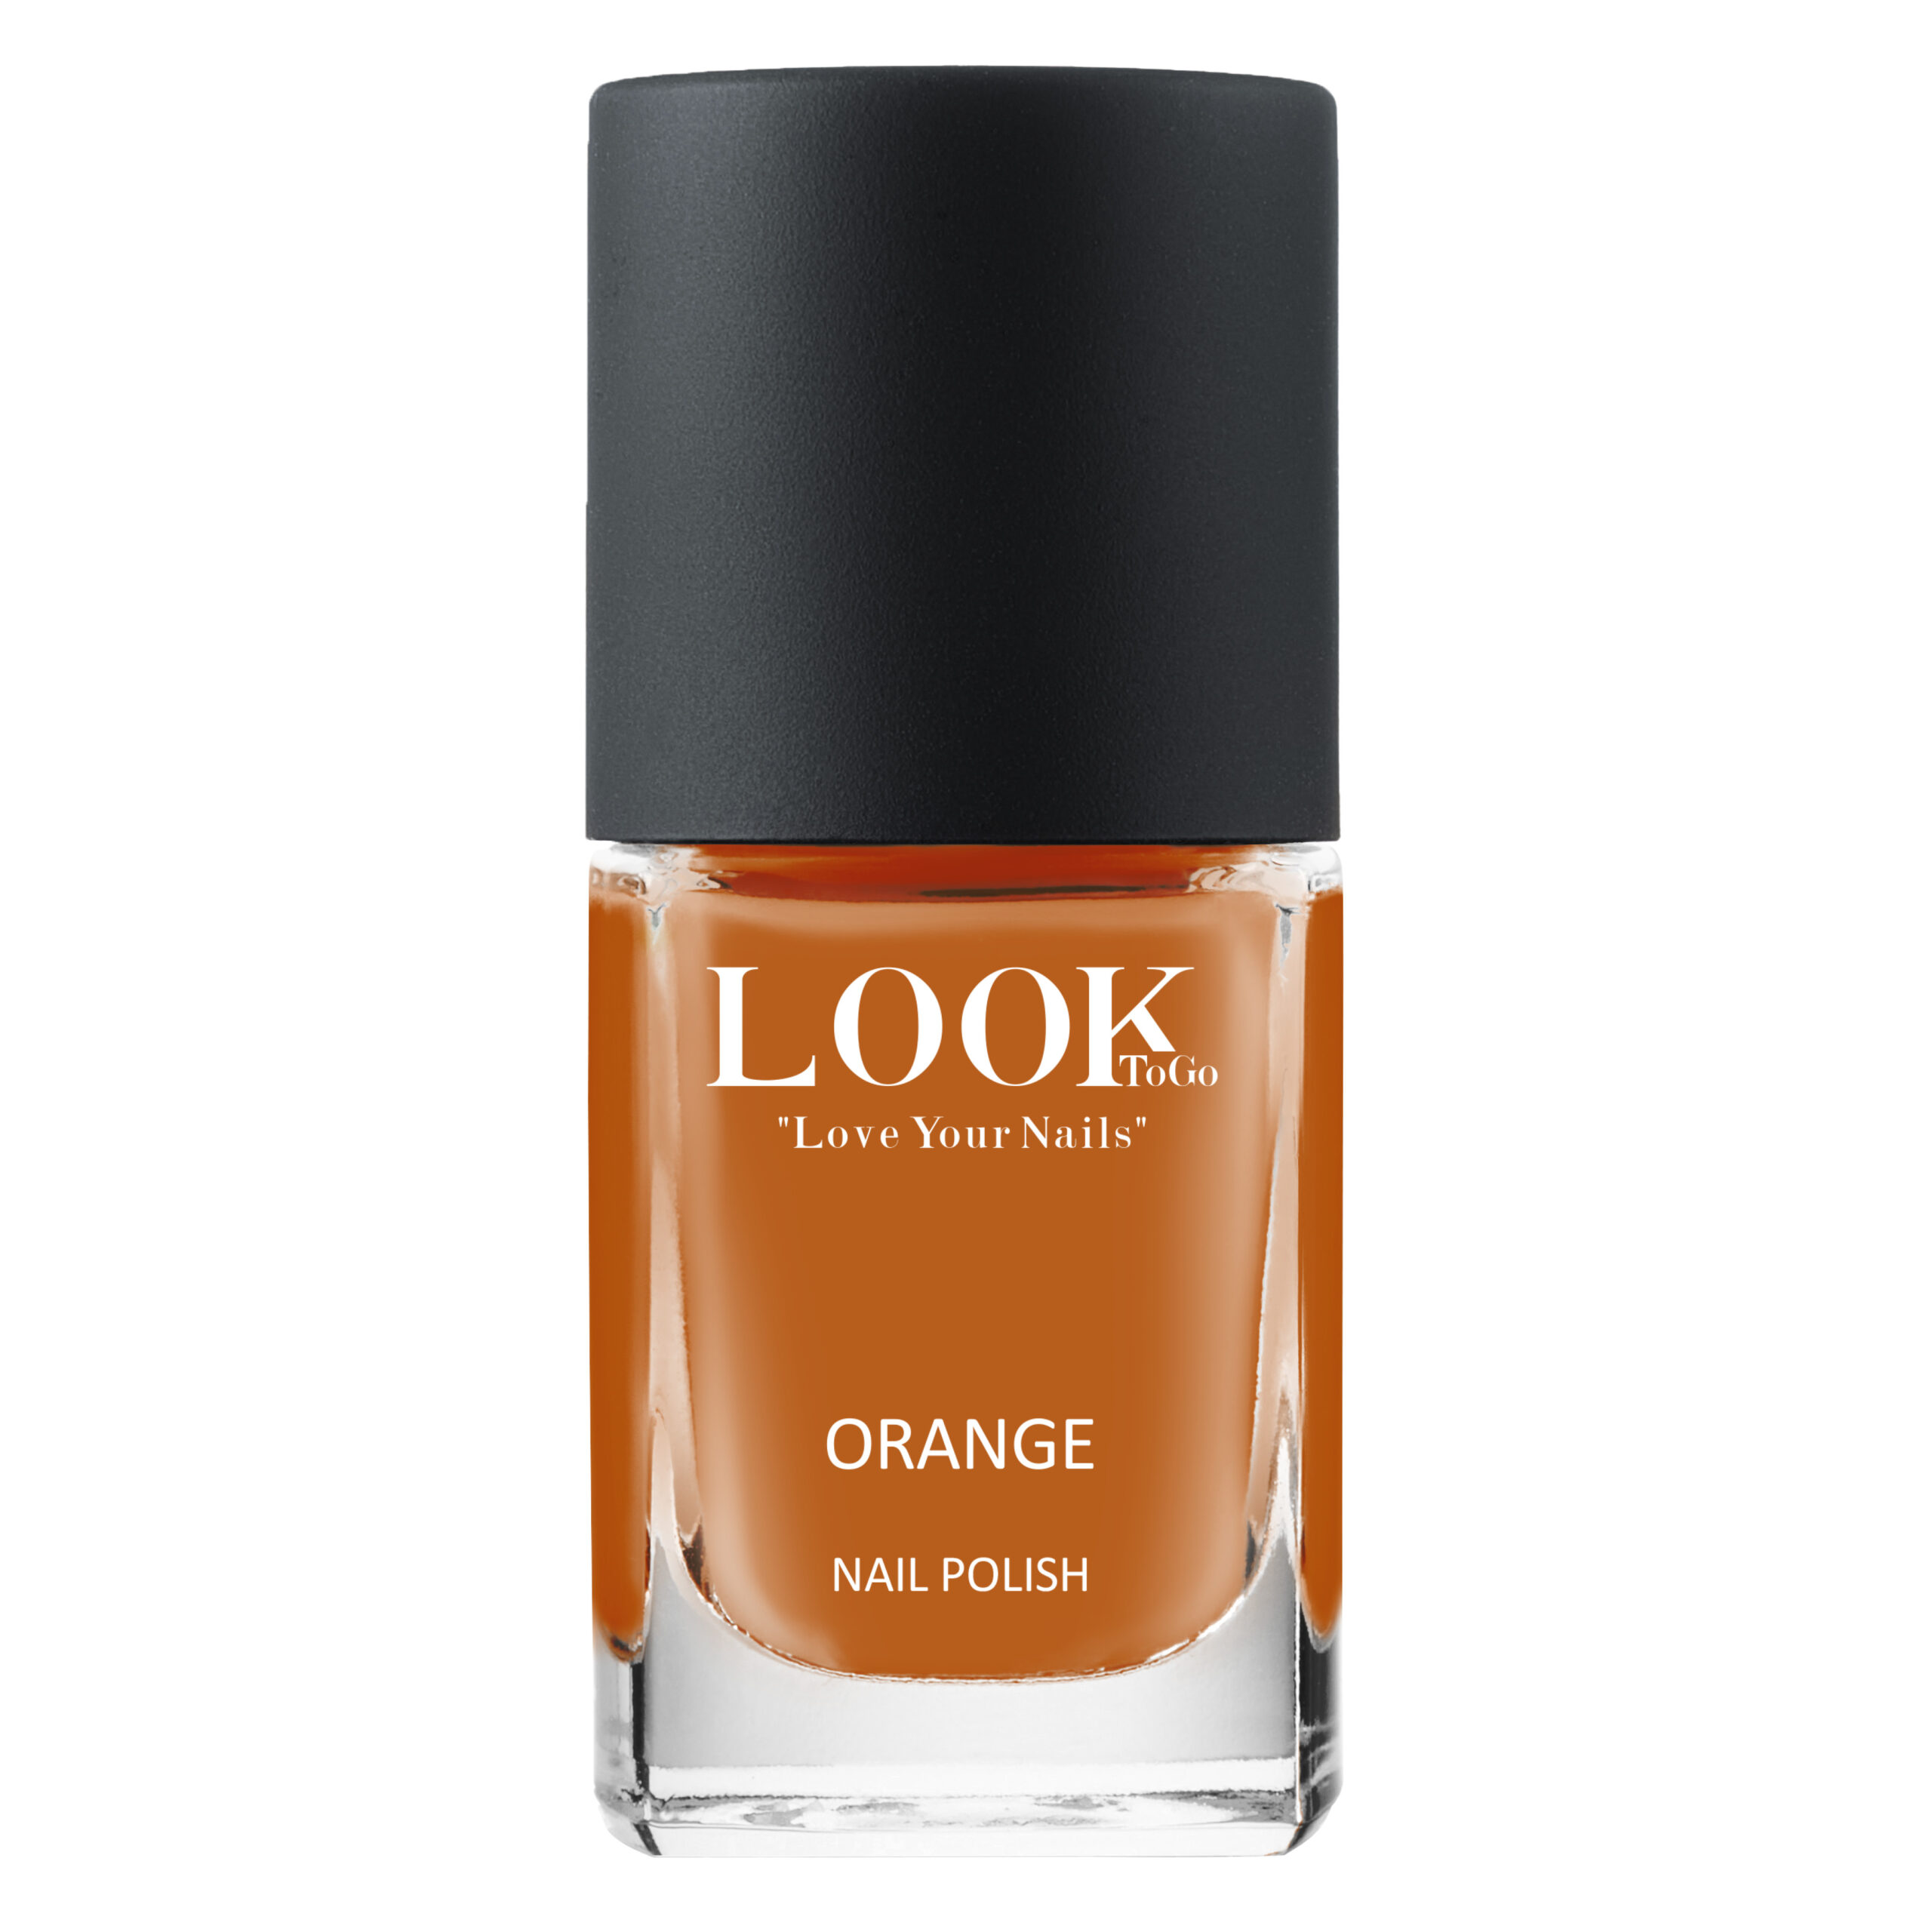 Nagellack "Orange" van Look-To-Go 